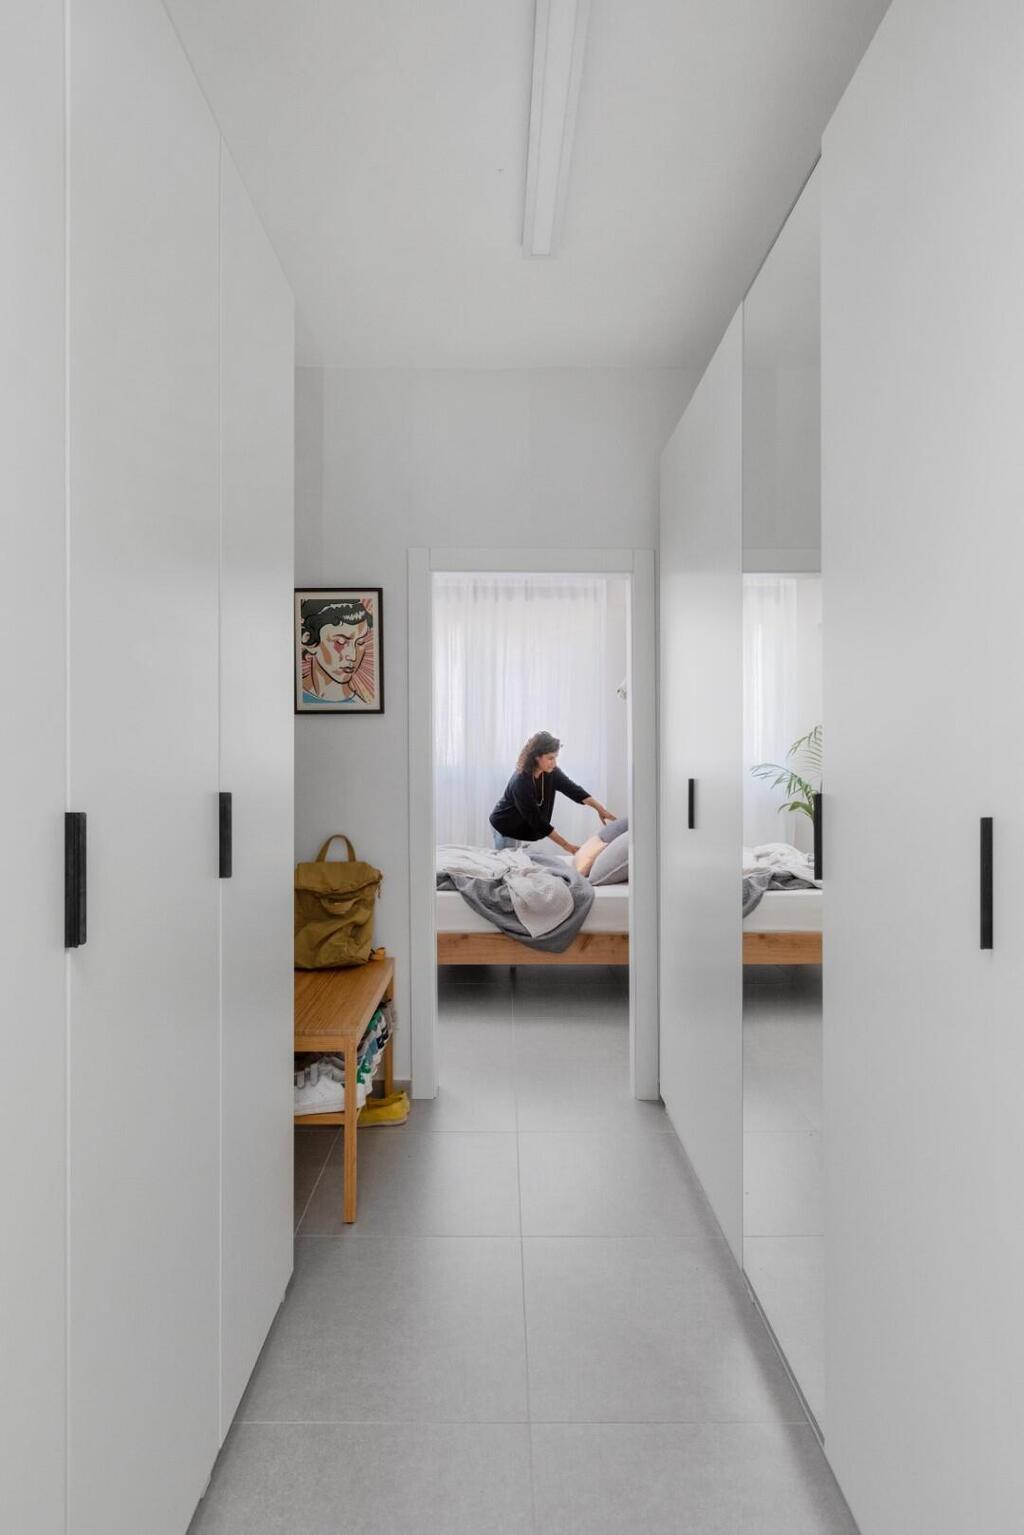 חדר ארונות מינימליסטי יוצר שקט ויזואלי בחדר השינה